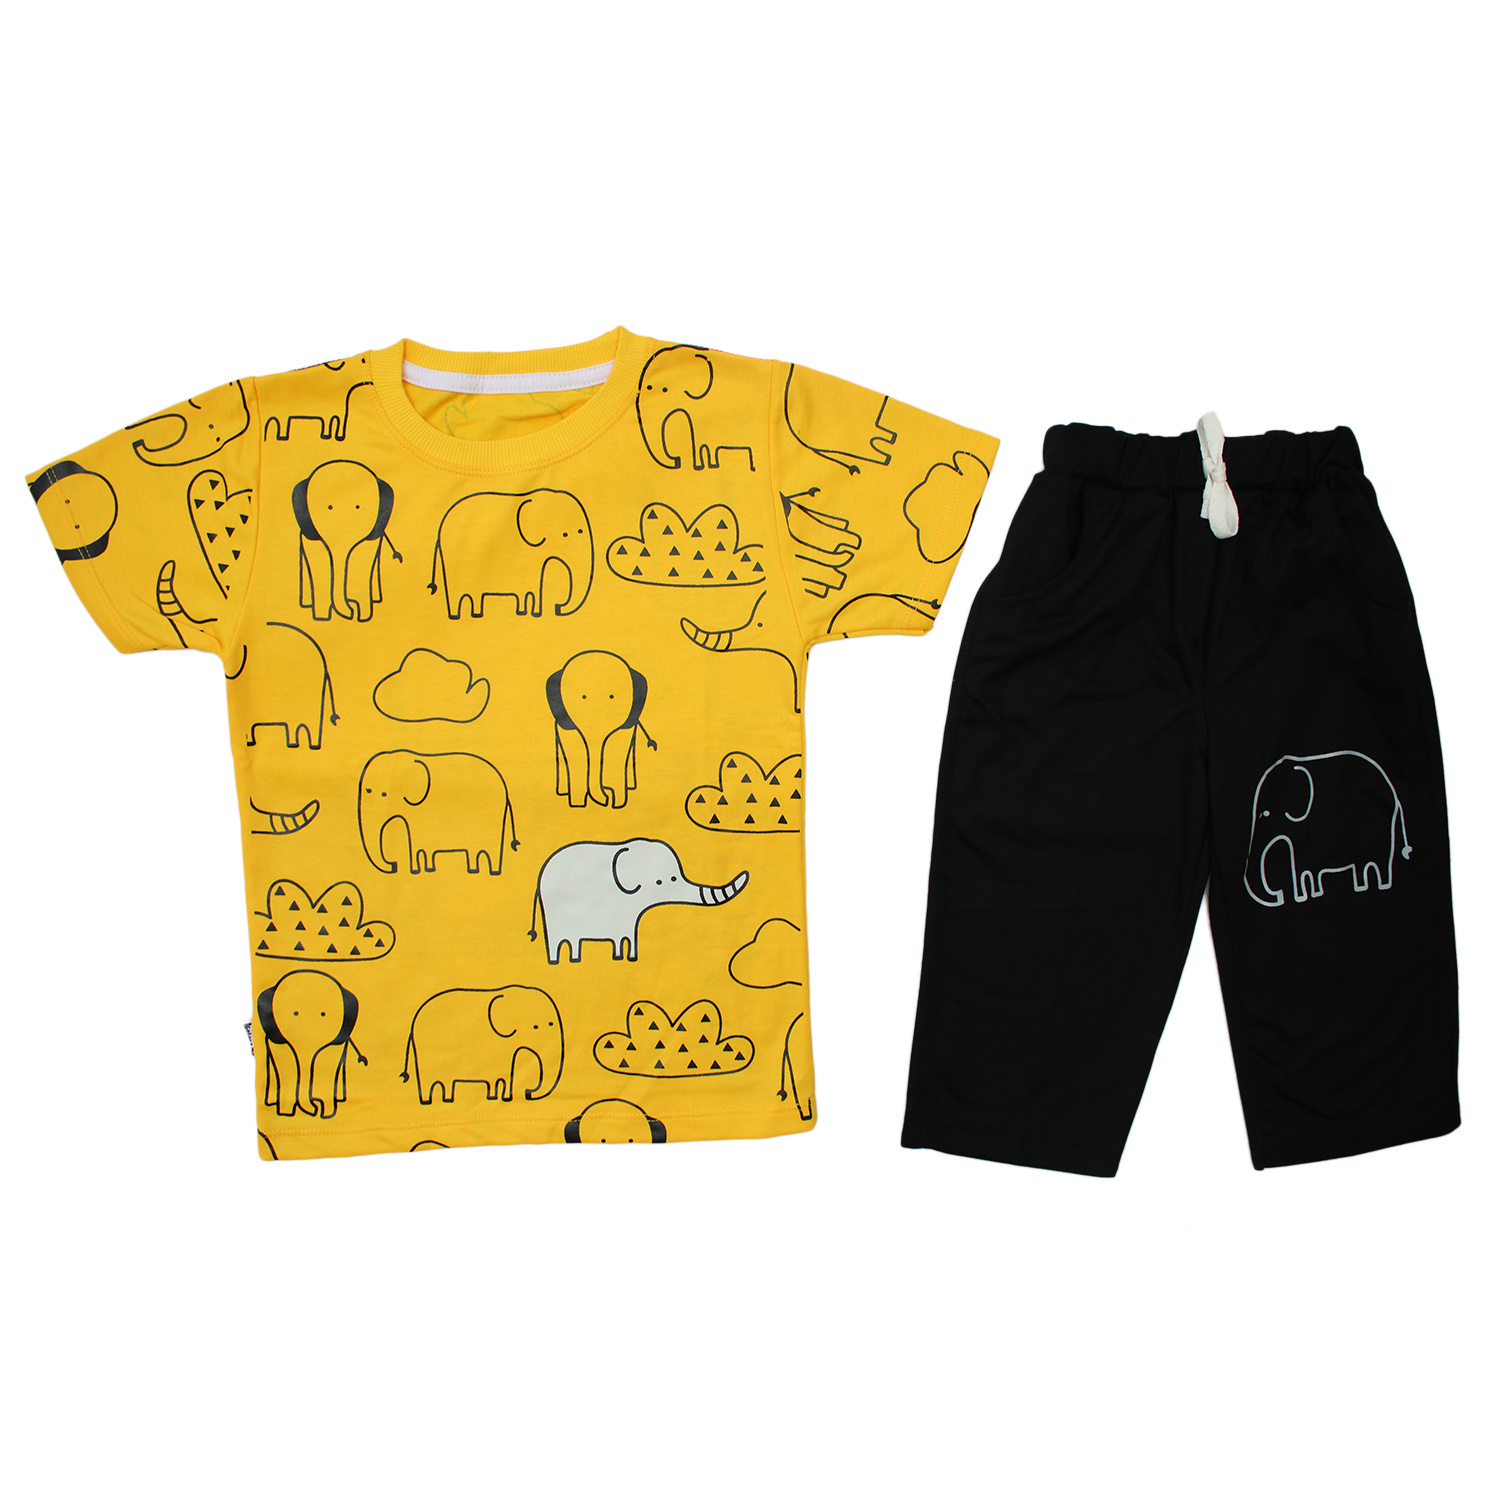 ست تی شرت و شلوارک بچگانه مدل فیل رنگ زرد